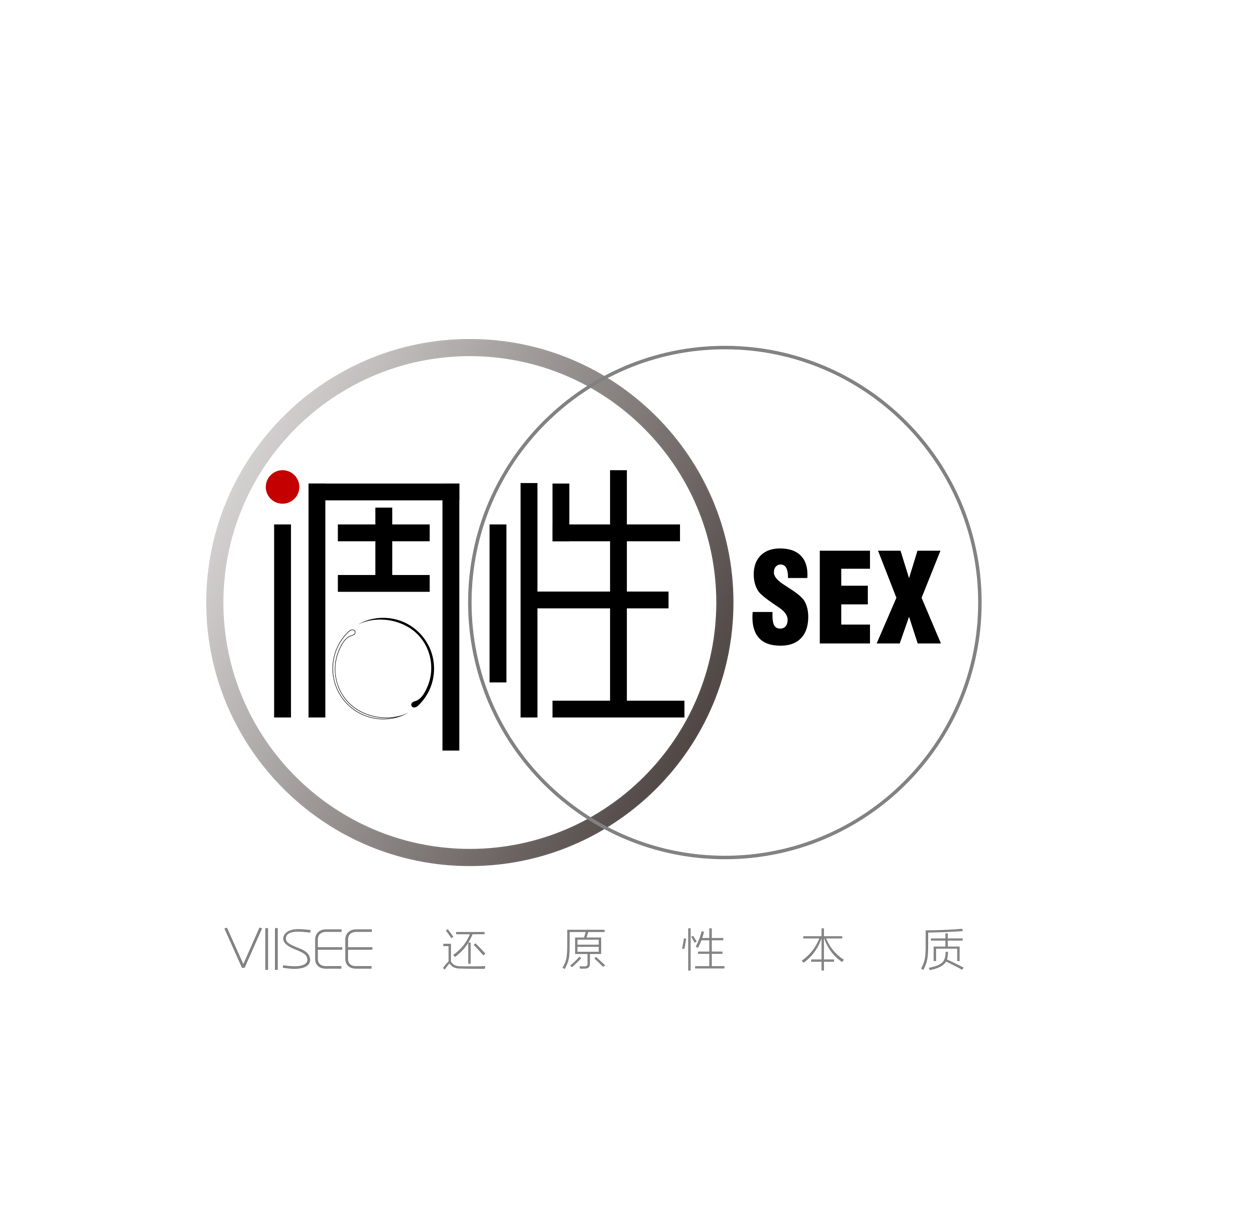 上海狠狠愛網路技術有限公司